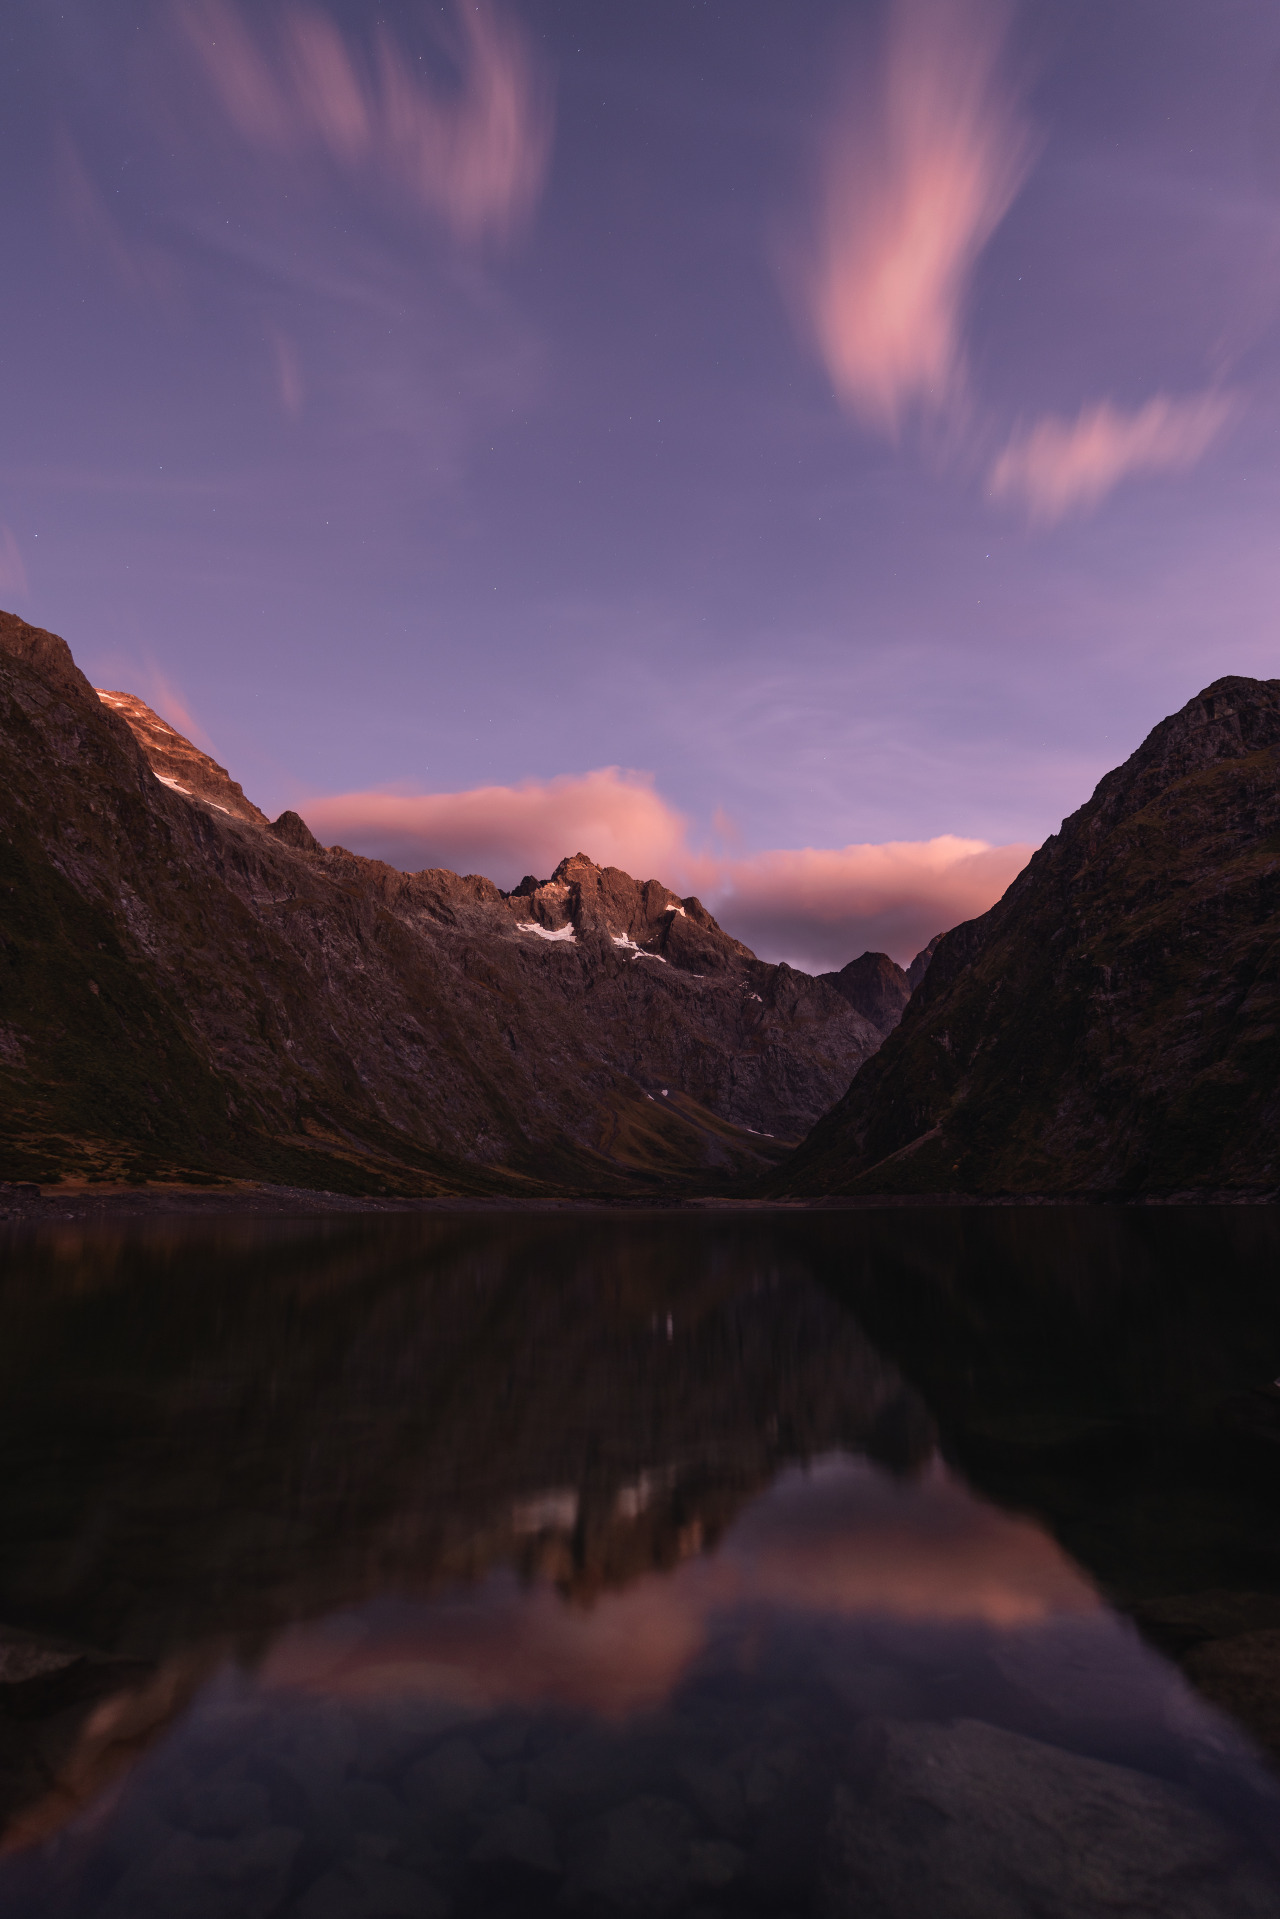 A serene moment just before sunrise. Lake Marian, New Zealand. [OC] [4918X7374] - Author: IIHackit on reddit #nature#travel#landscape#amazing#beautiful